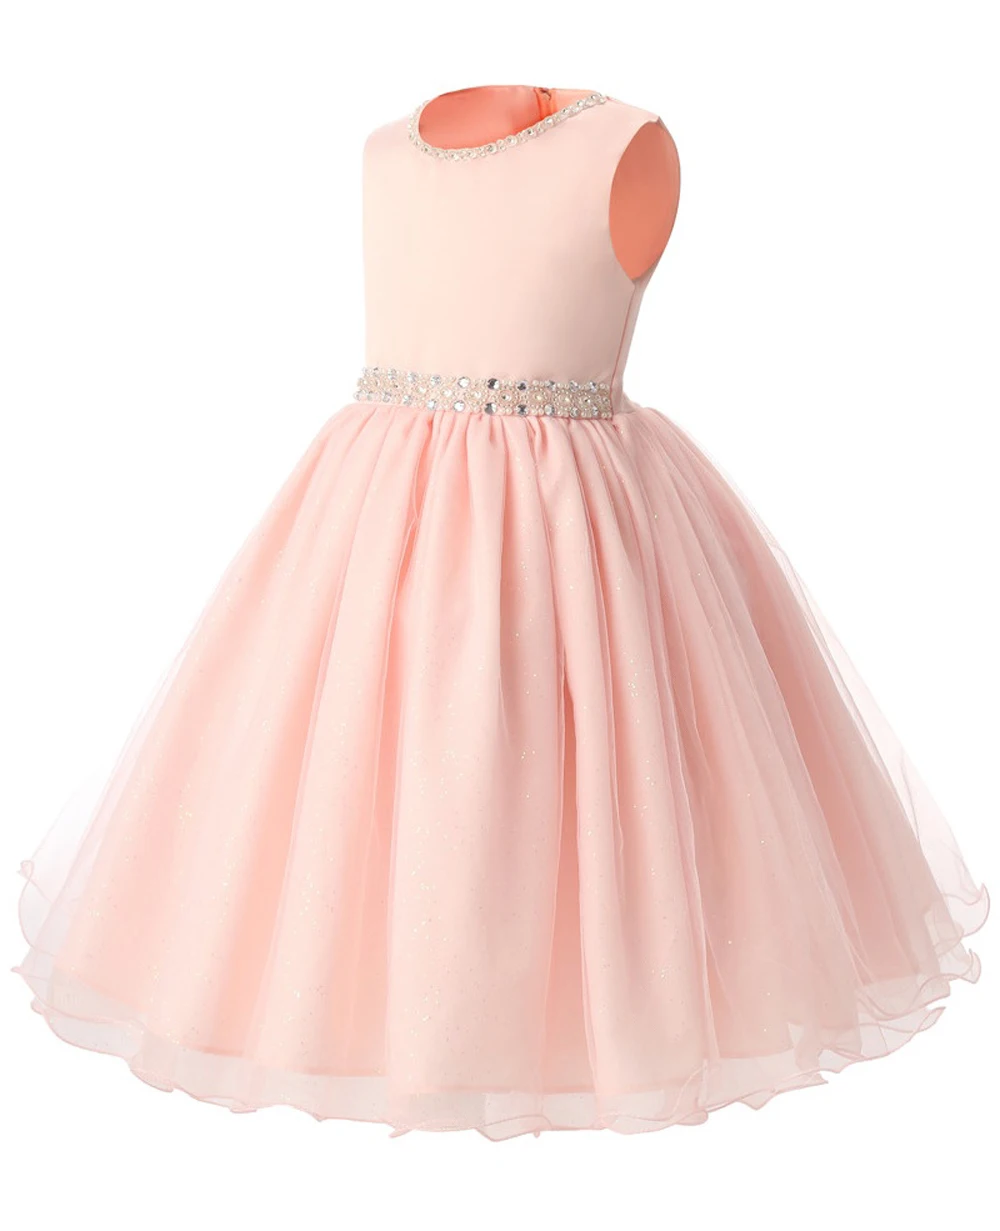 JaneyGao/Платья с цветочным узором для девочек для свадебной вечеринки, розовые летние платья для девочек, коллекция 2019 года, торжественные